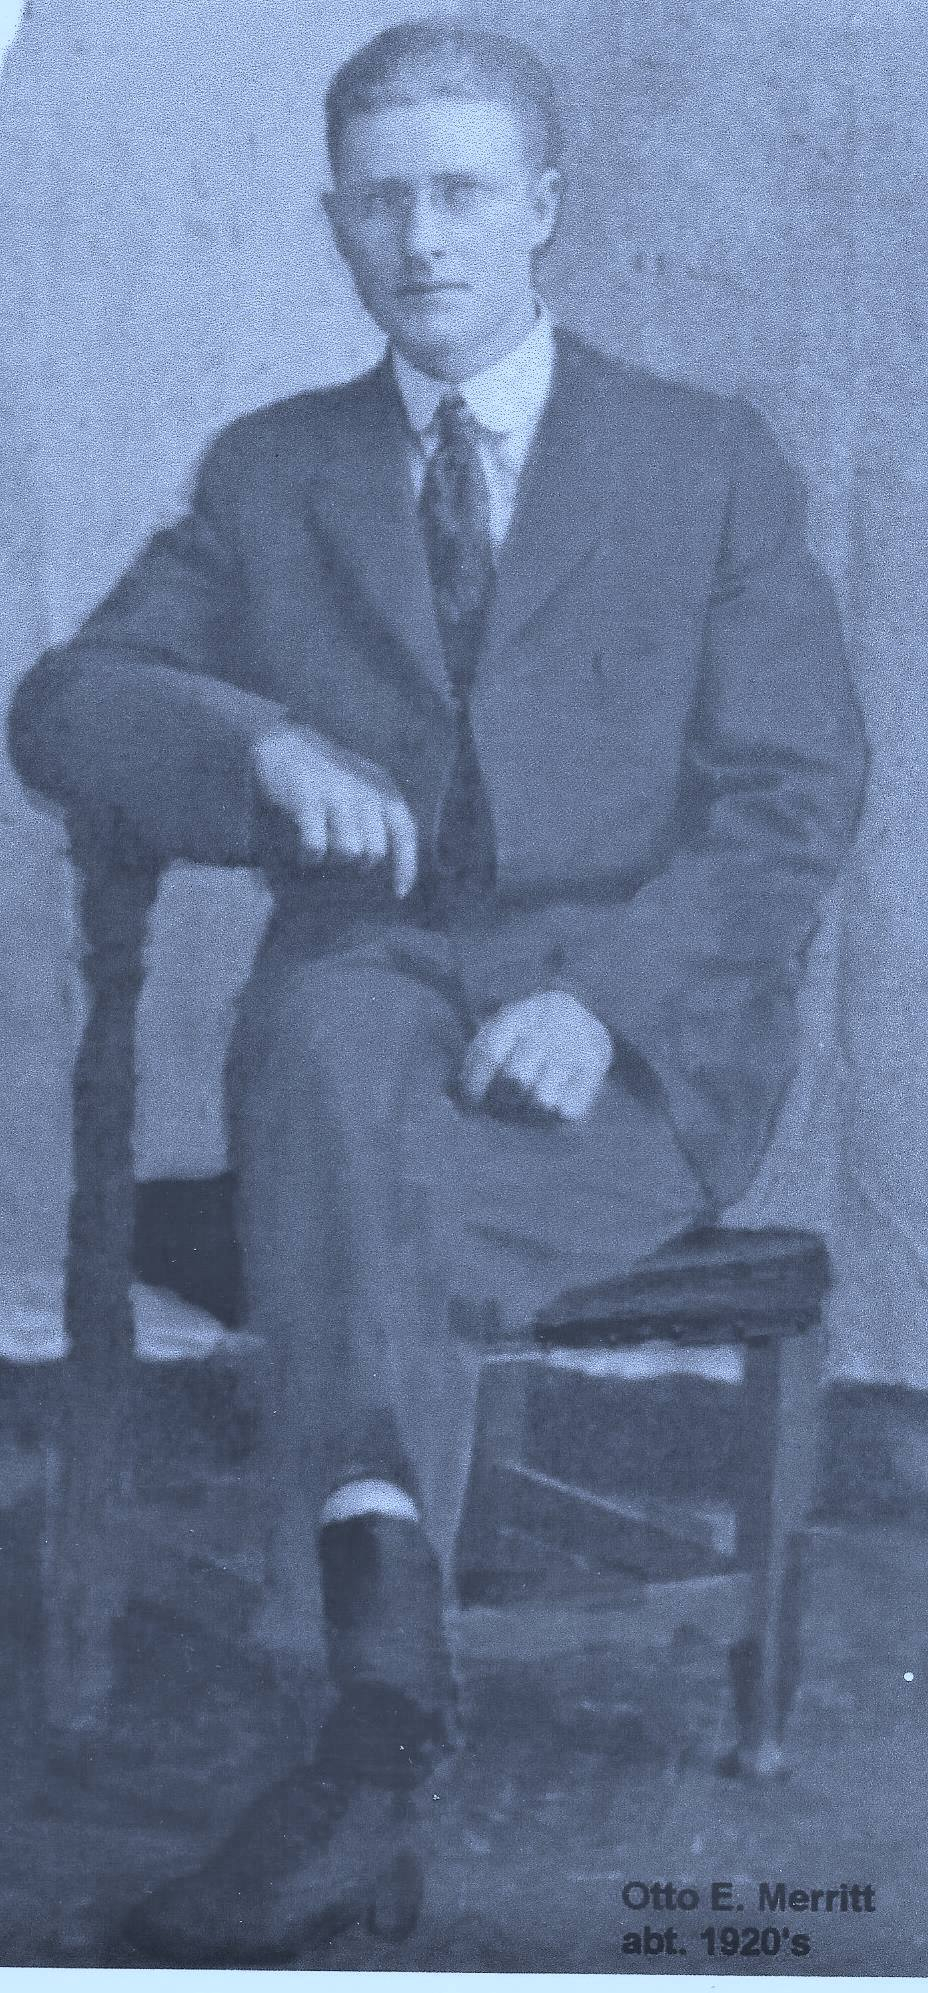 Otto Merritt